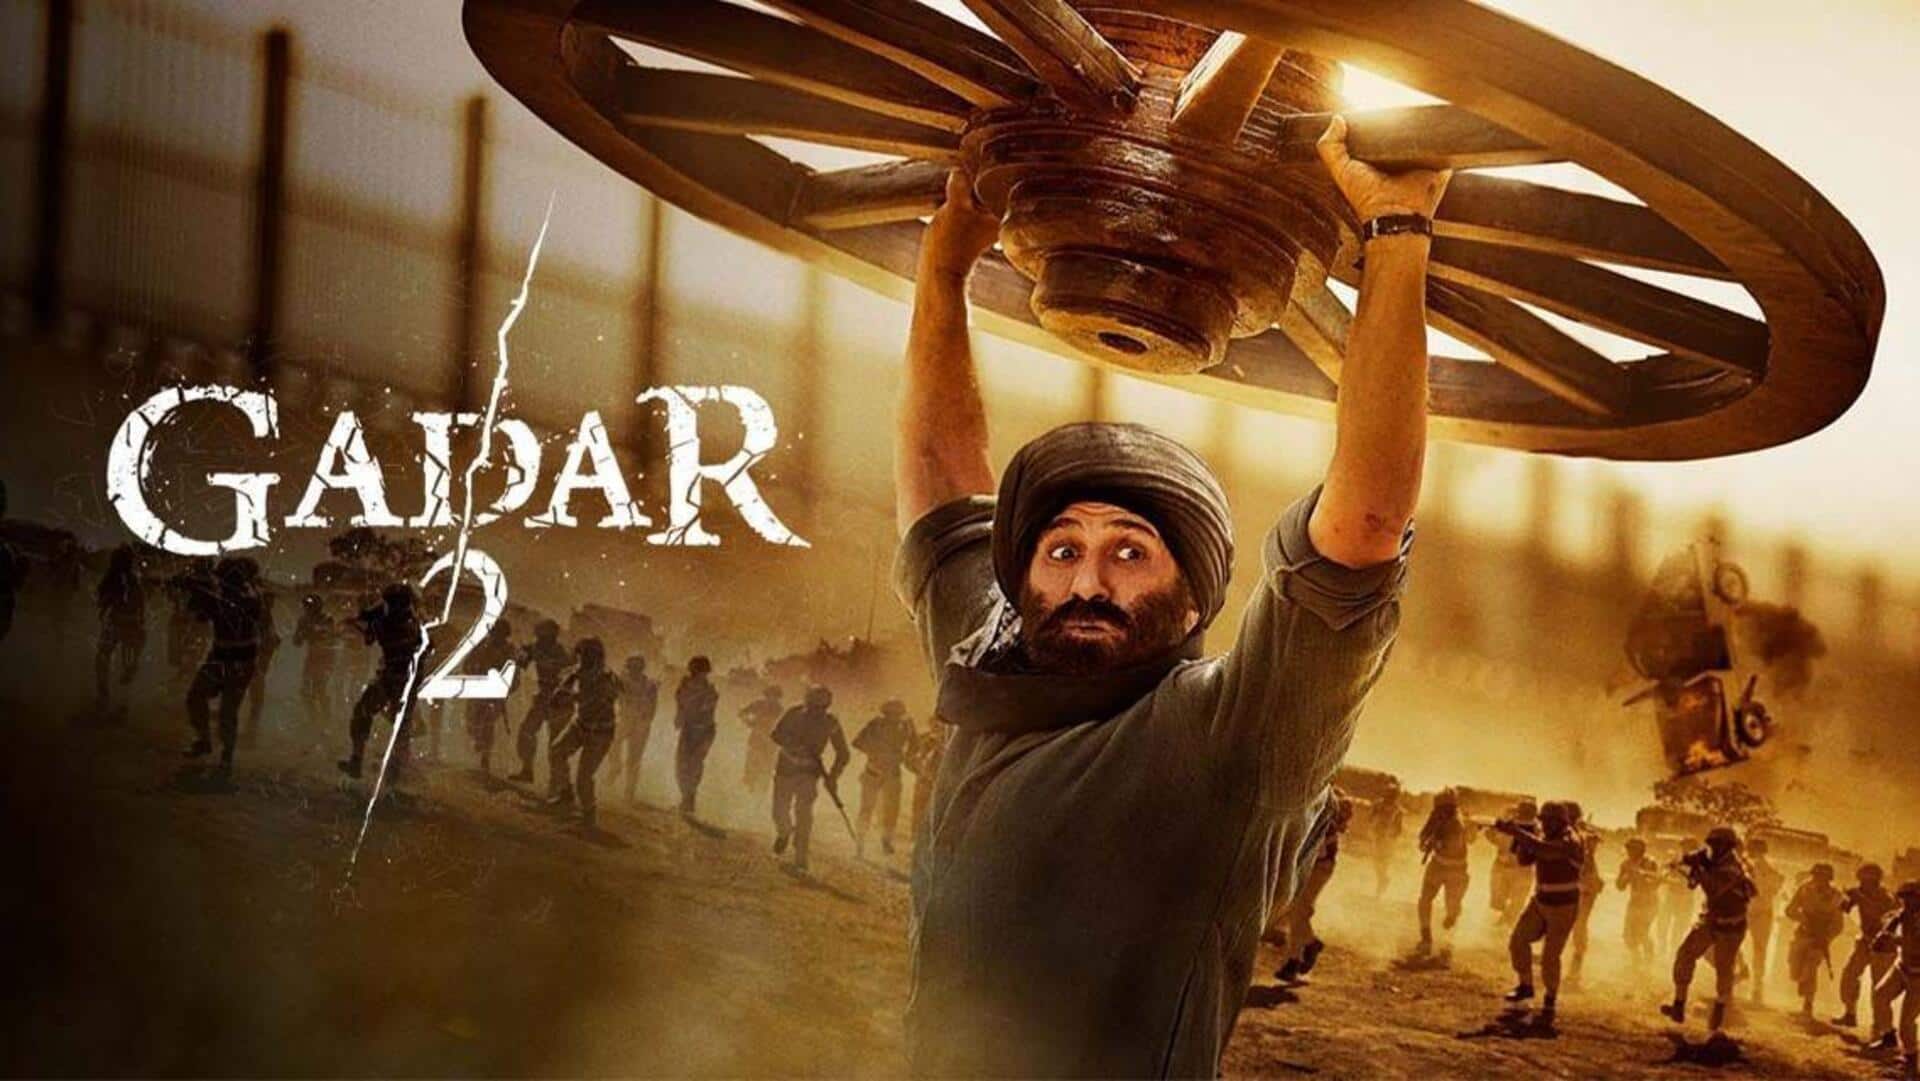 Box office collection: Tough weekend awaits 'Gadar 2'